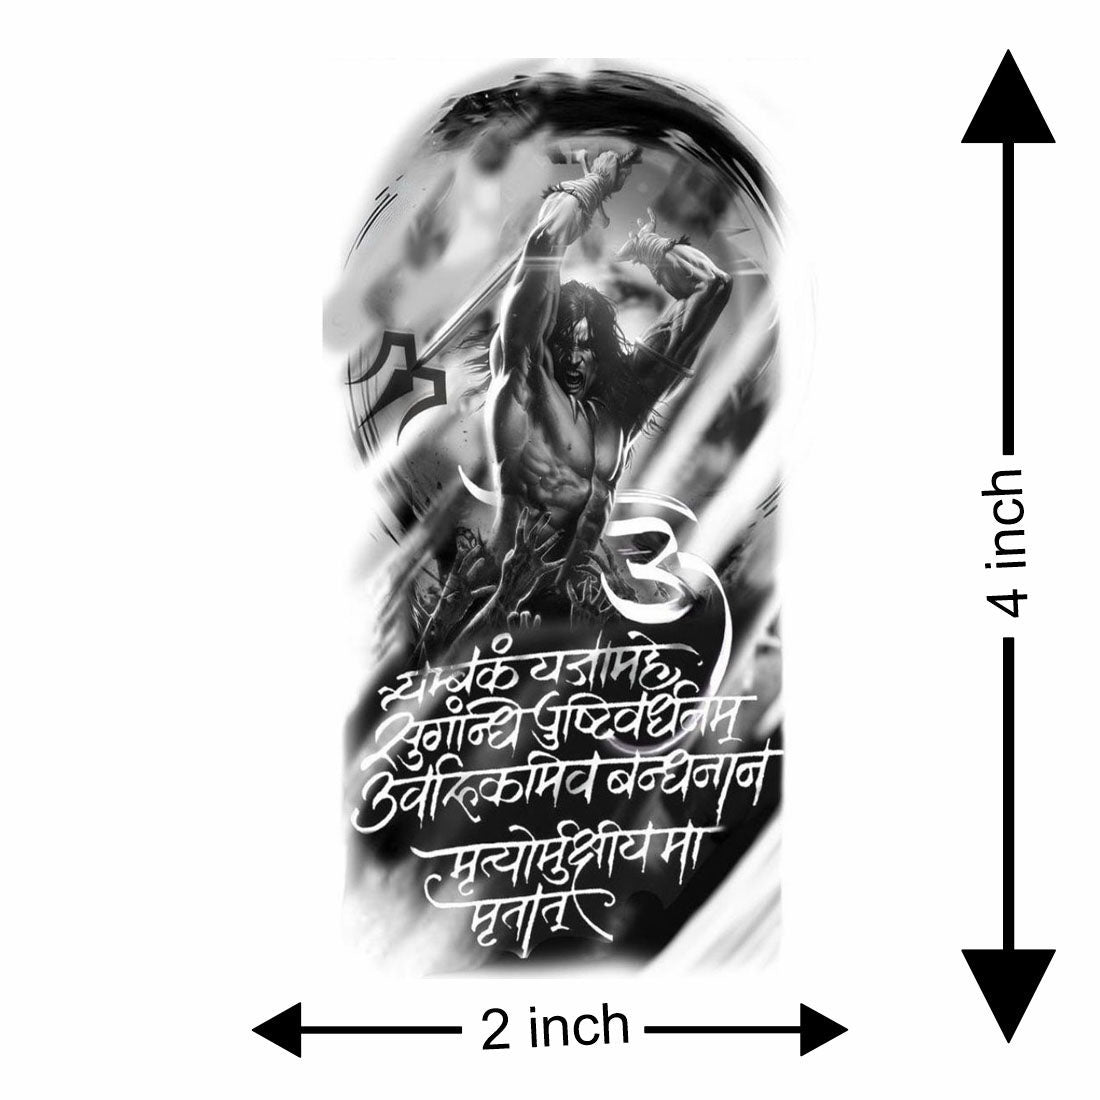 Mantra Tattoos | Sanskrit Mantra Tattoo Designs | Sanskrit Tattoo Designs